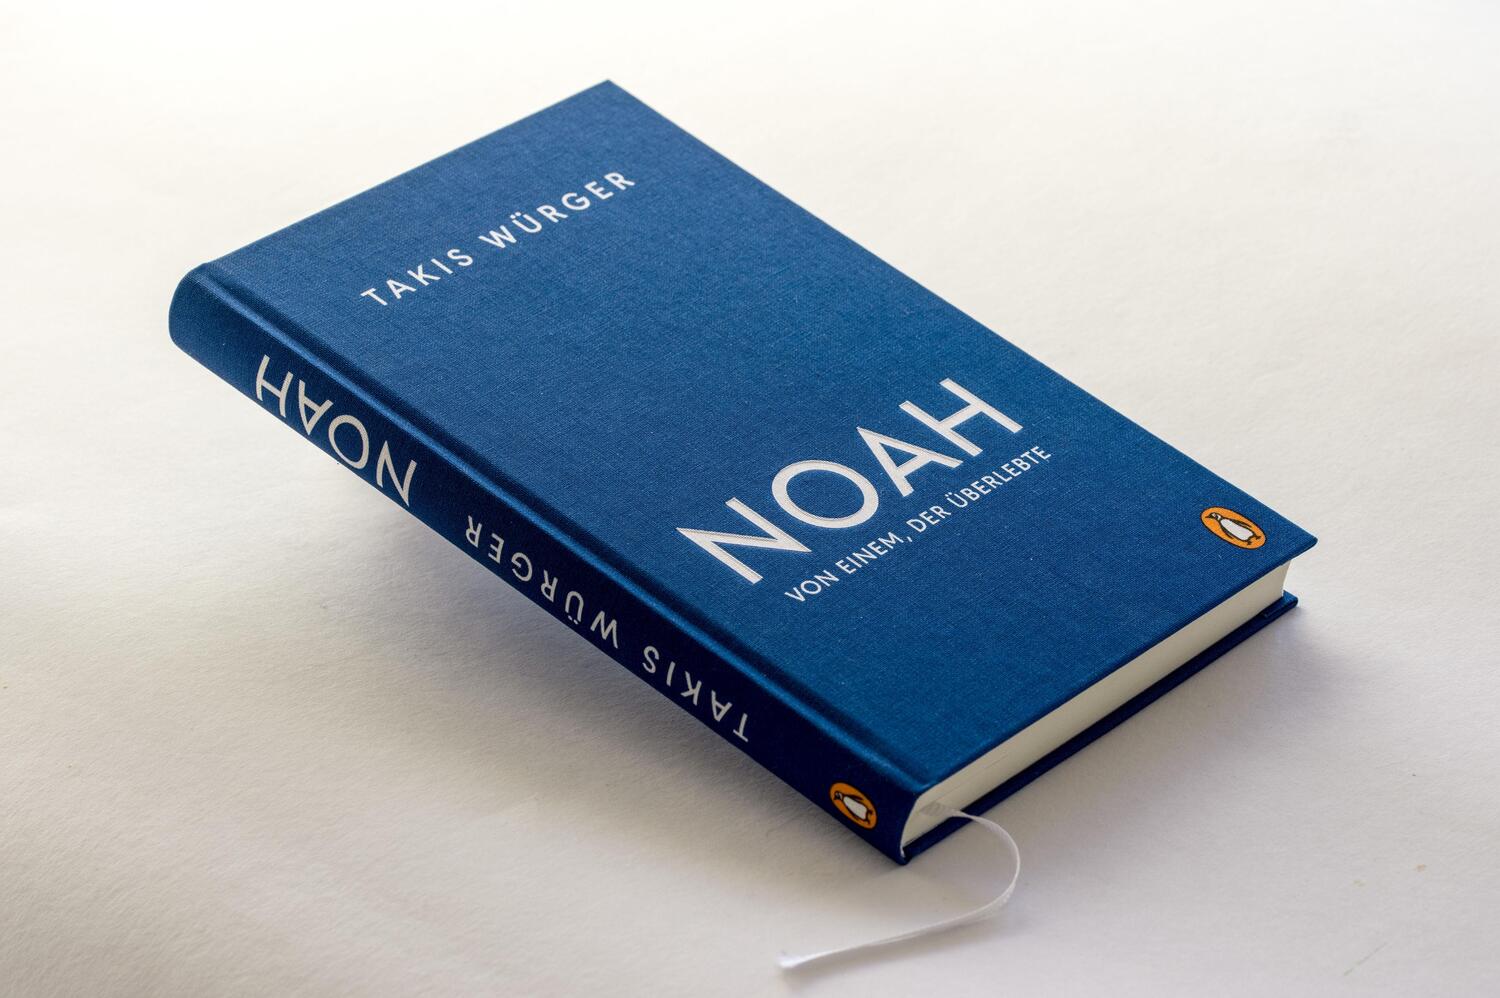 Bild: 9783328601678 | Noah - Von einem, der überlebte | Der Spiegel-Bestseller | Würger